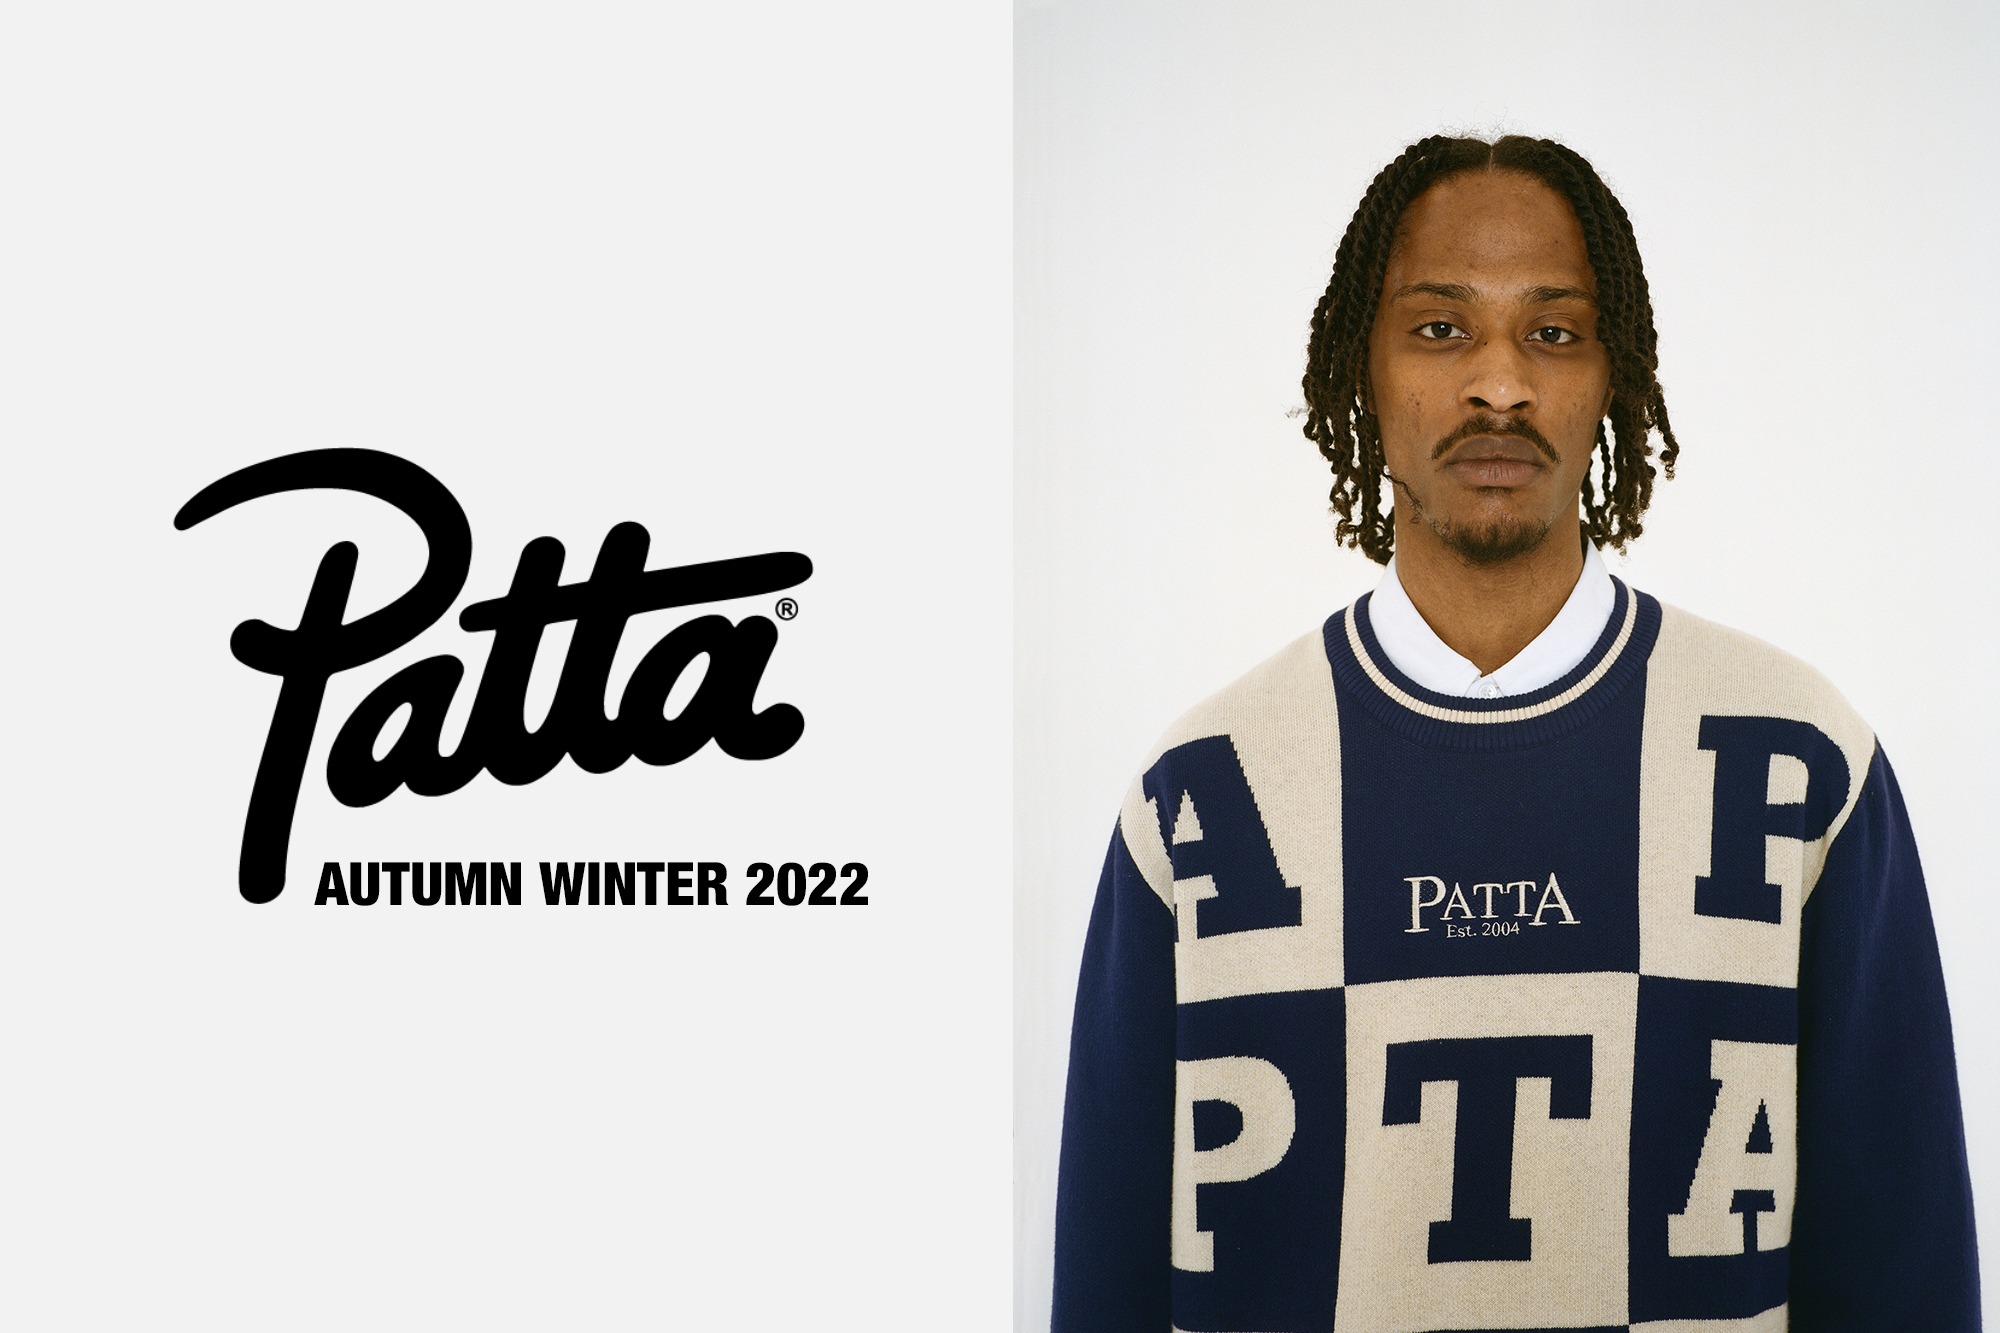 Autumn Winter 2022 Tops